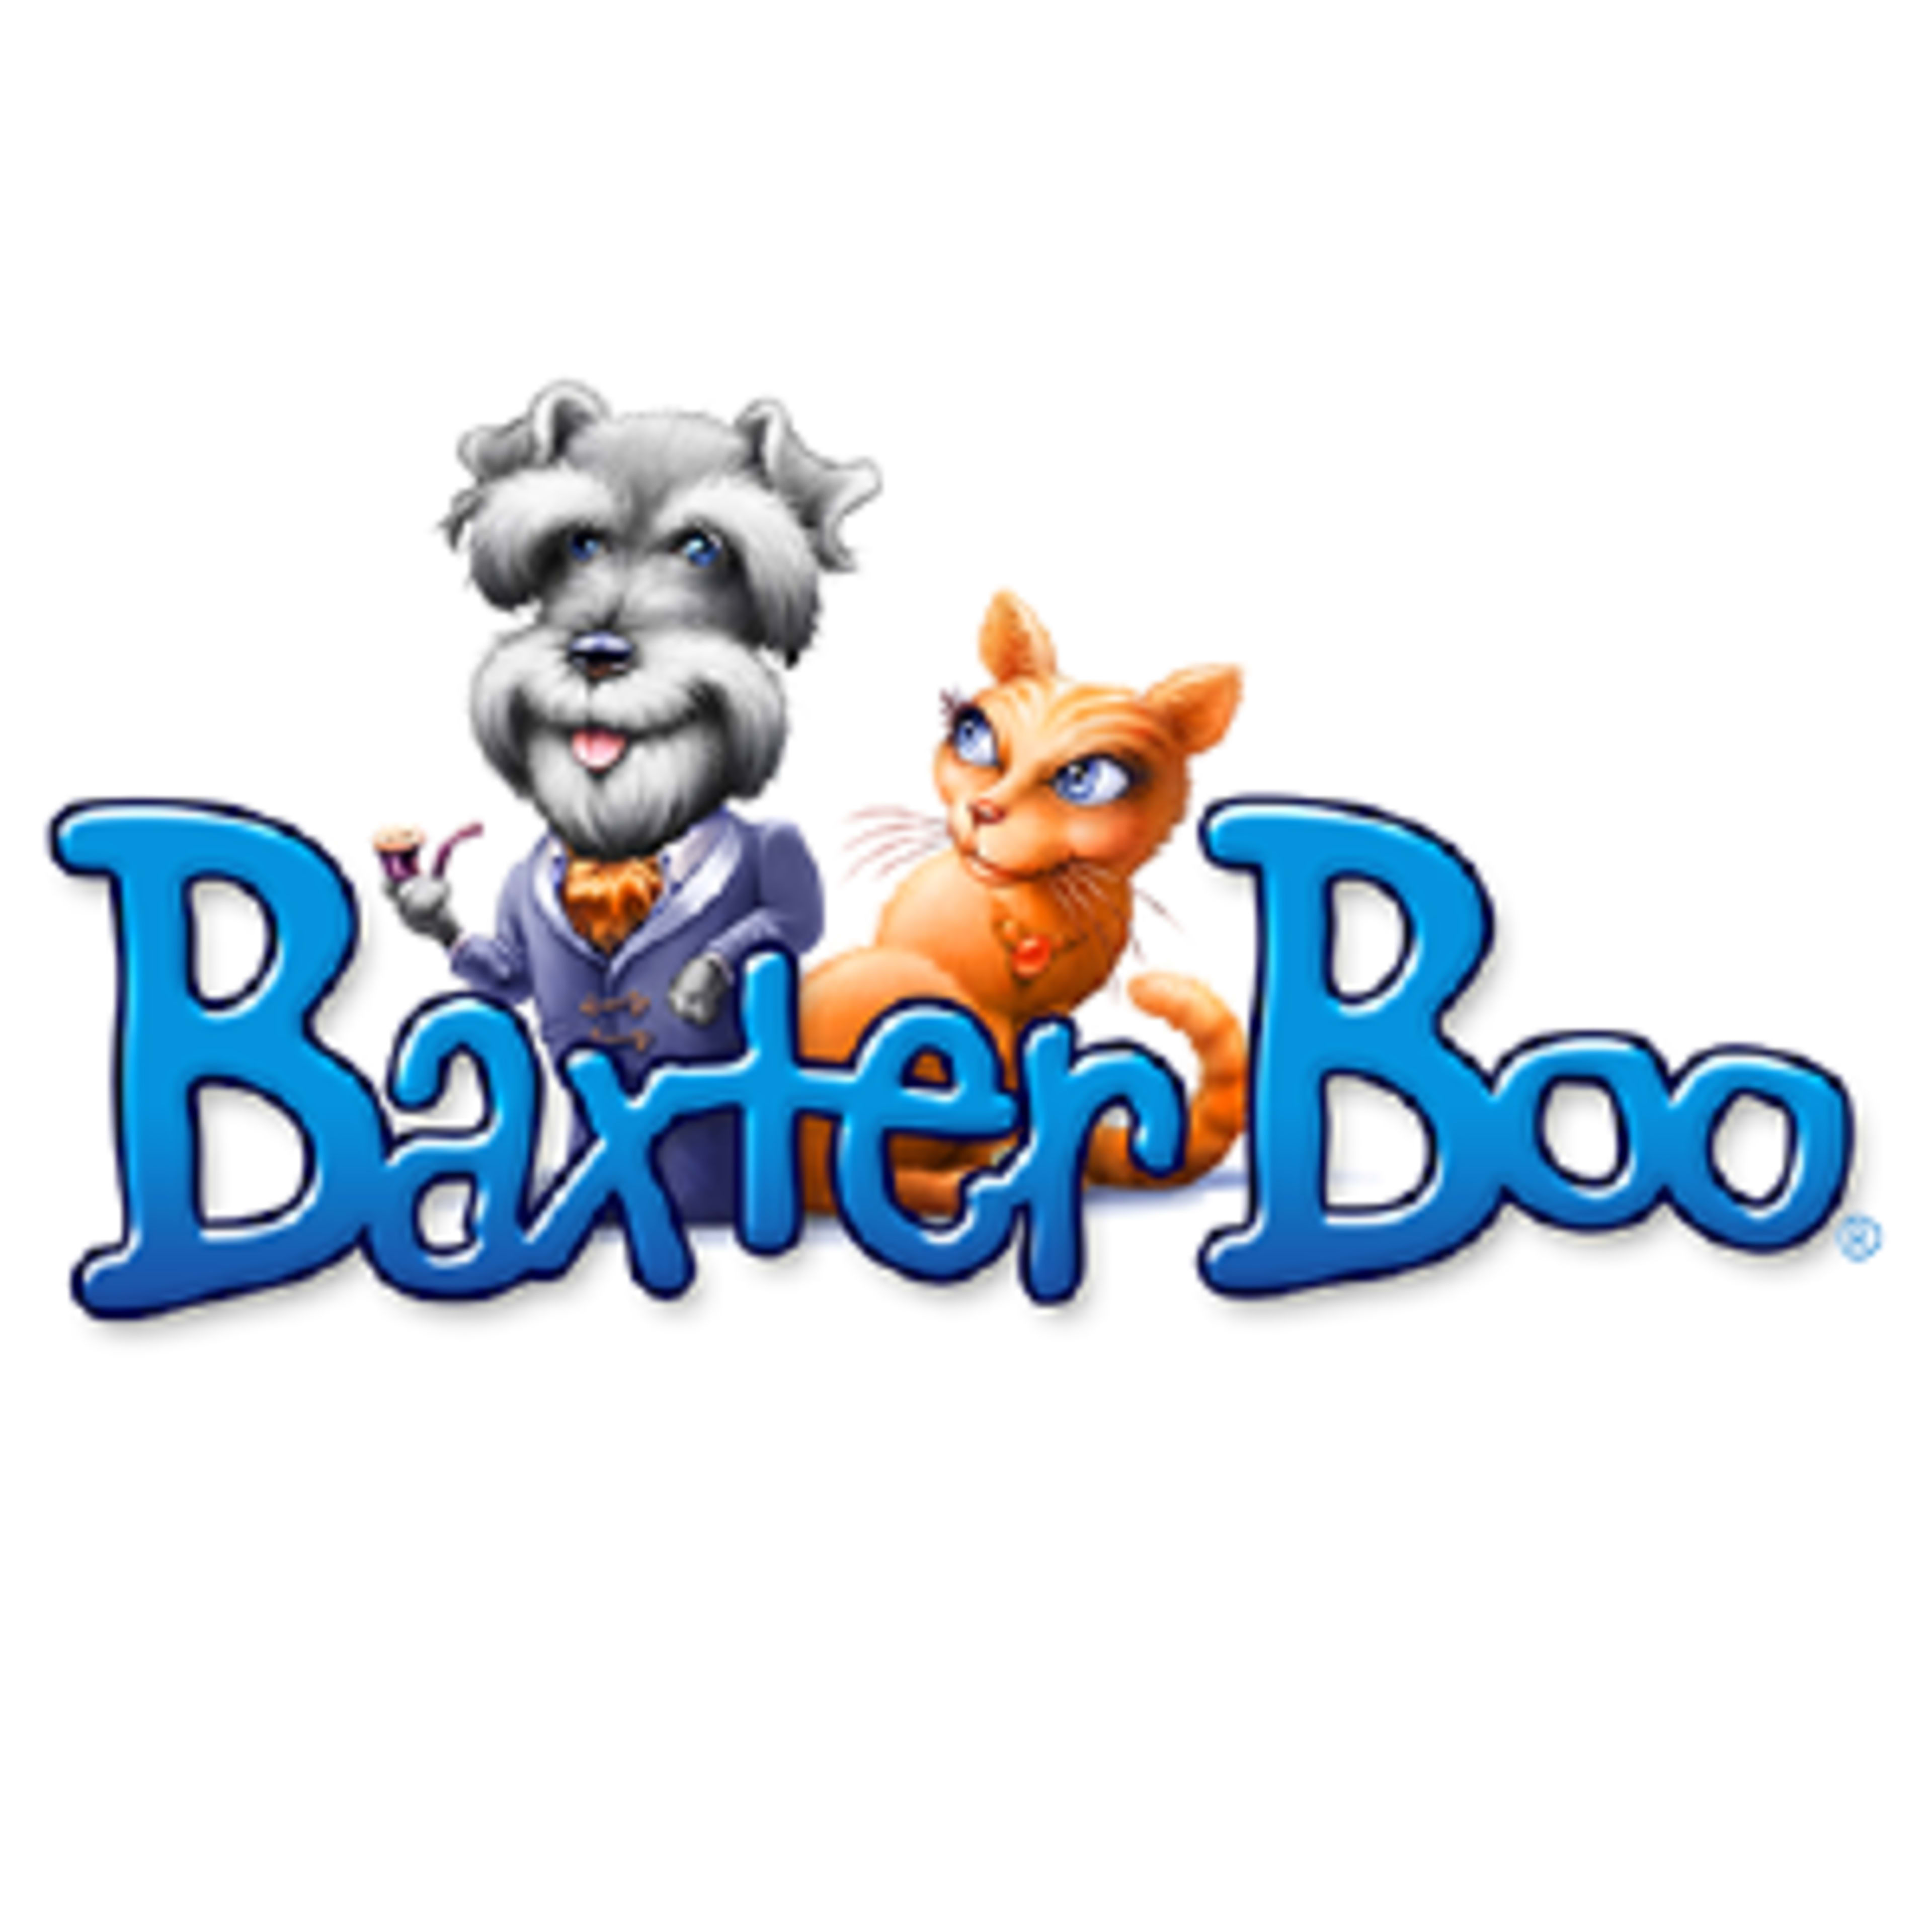 BaxterBooCode